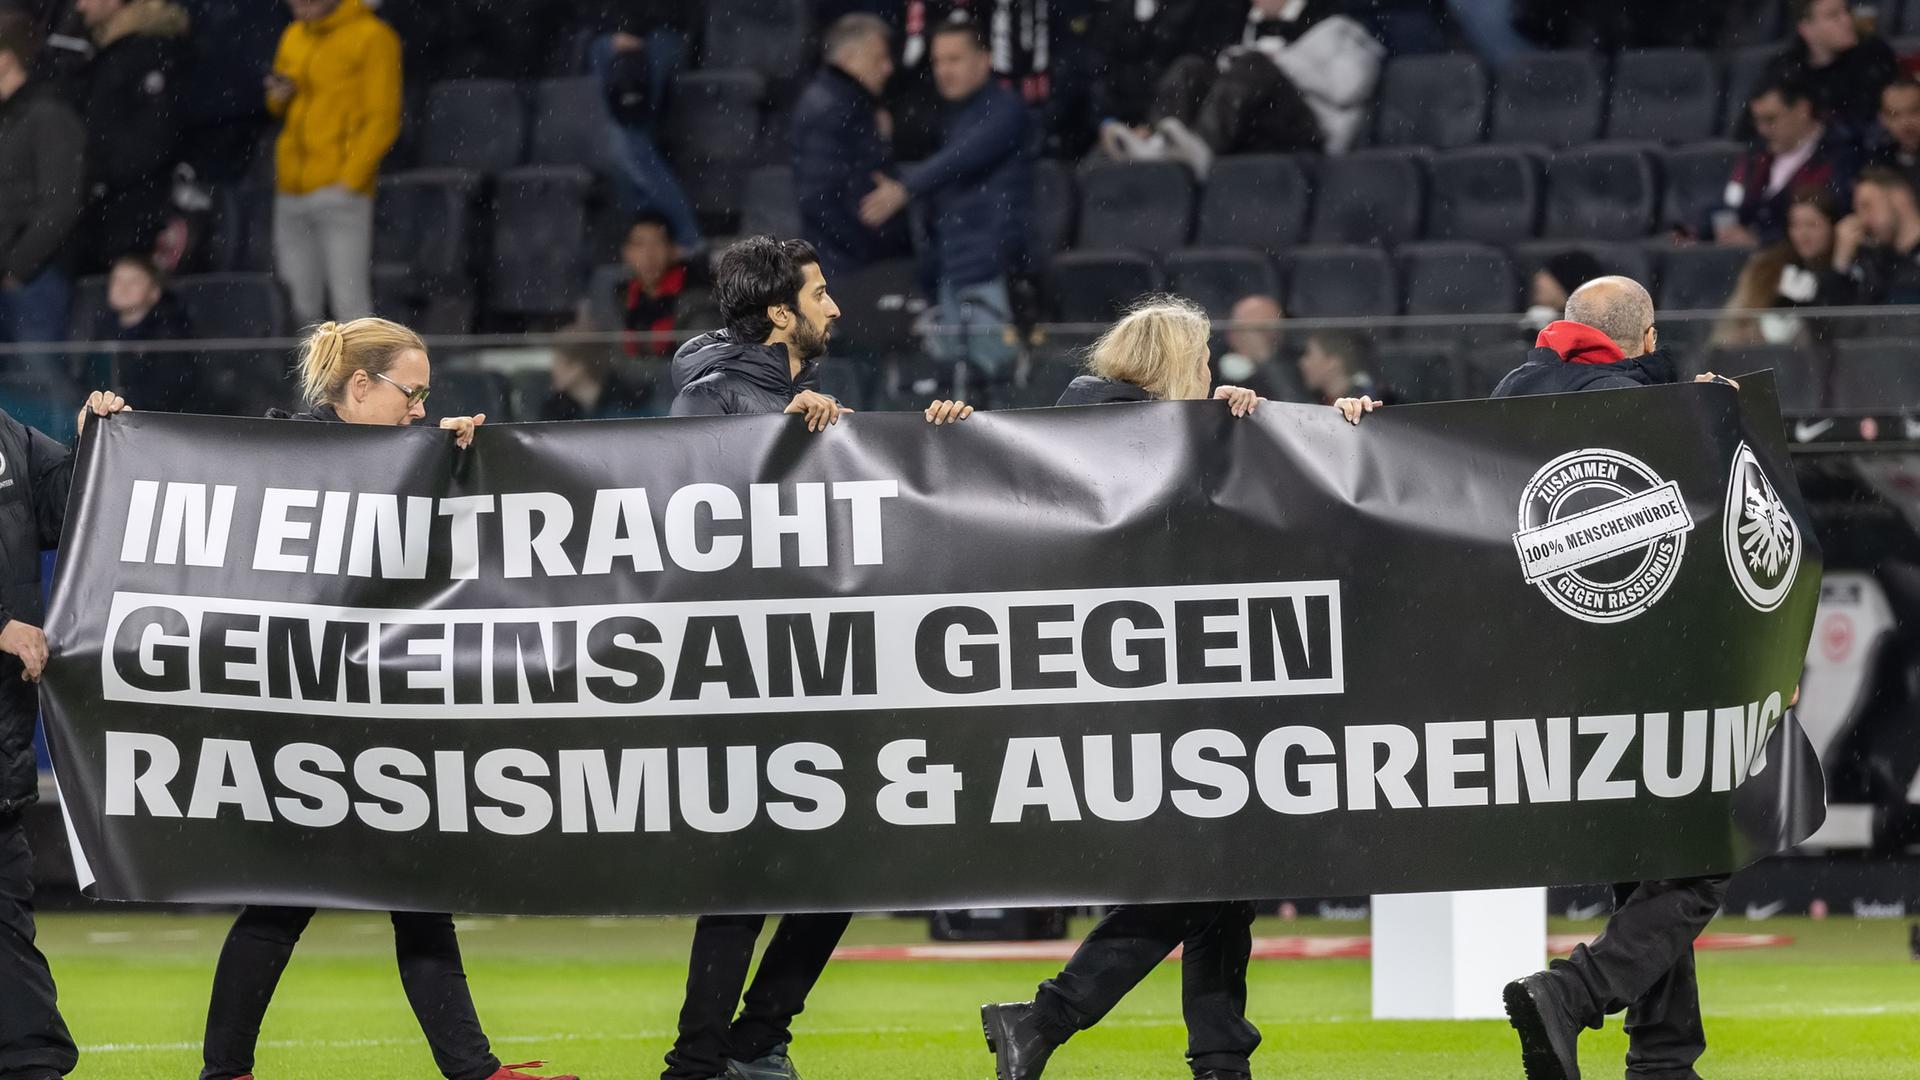 Bei einem Spiel der Fußball-Bundesliga in Frankfurt wird ein Banner gegen Rassismus und Ausgrenzung präsentiert.